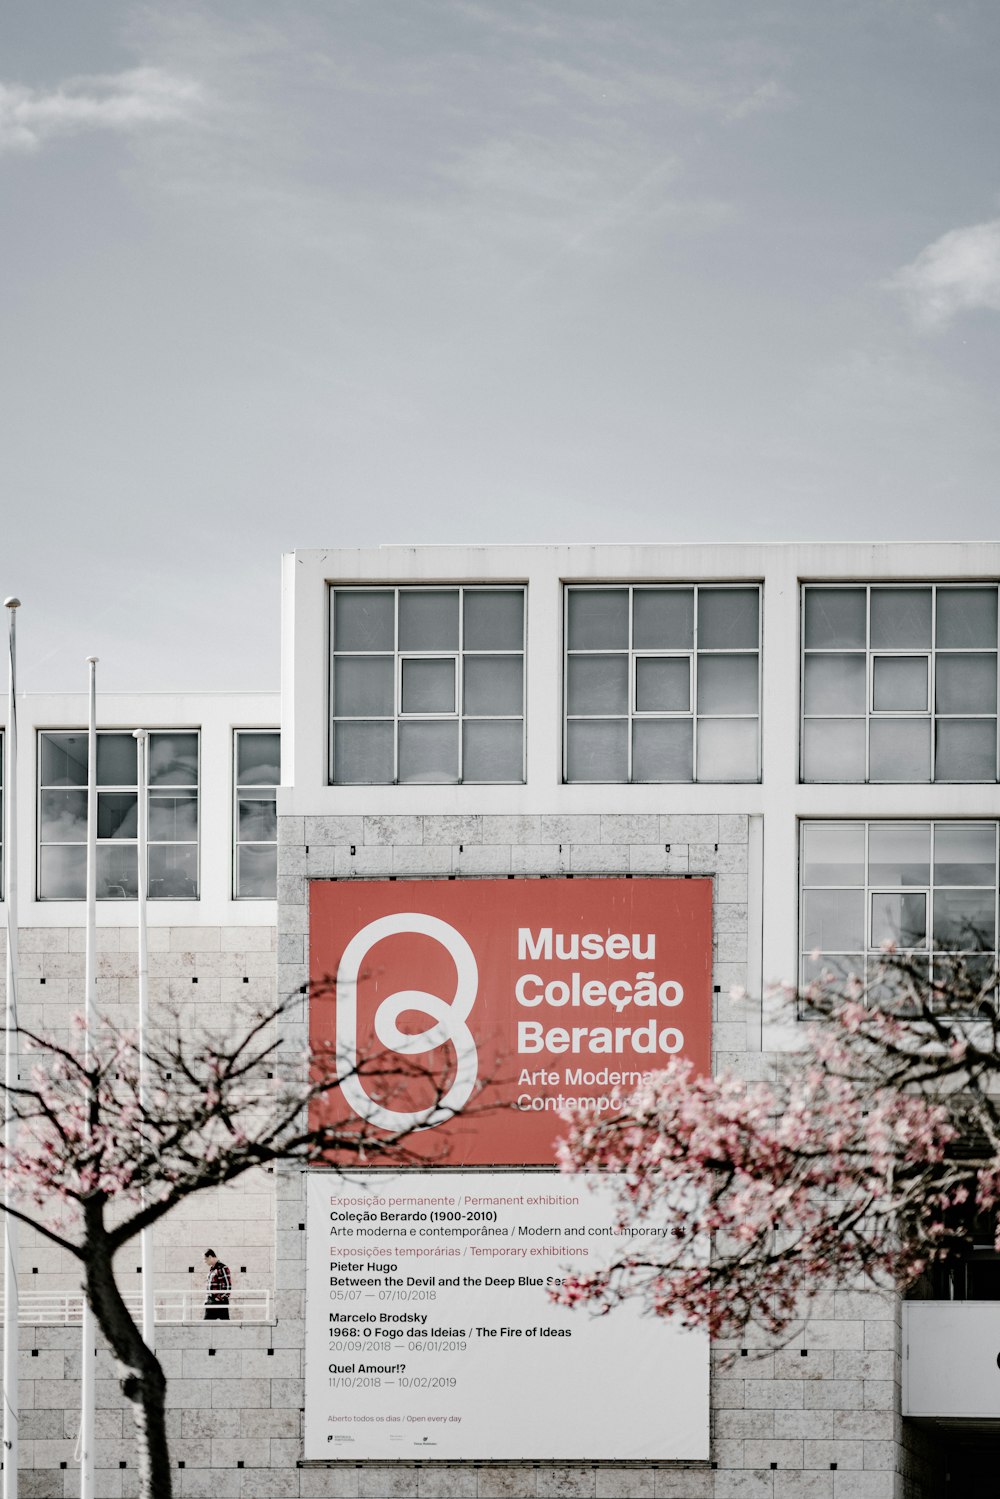 Museu Colecao Berardo building